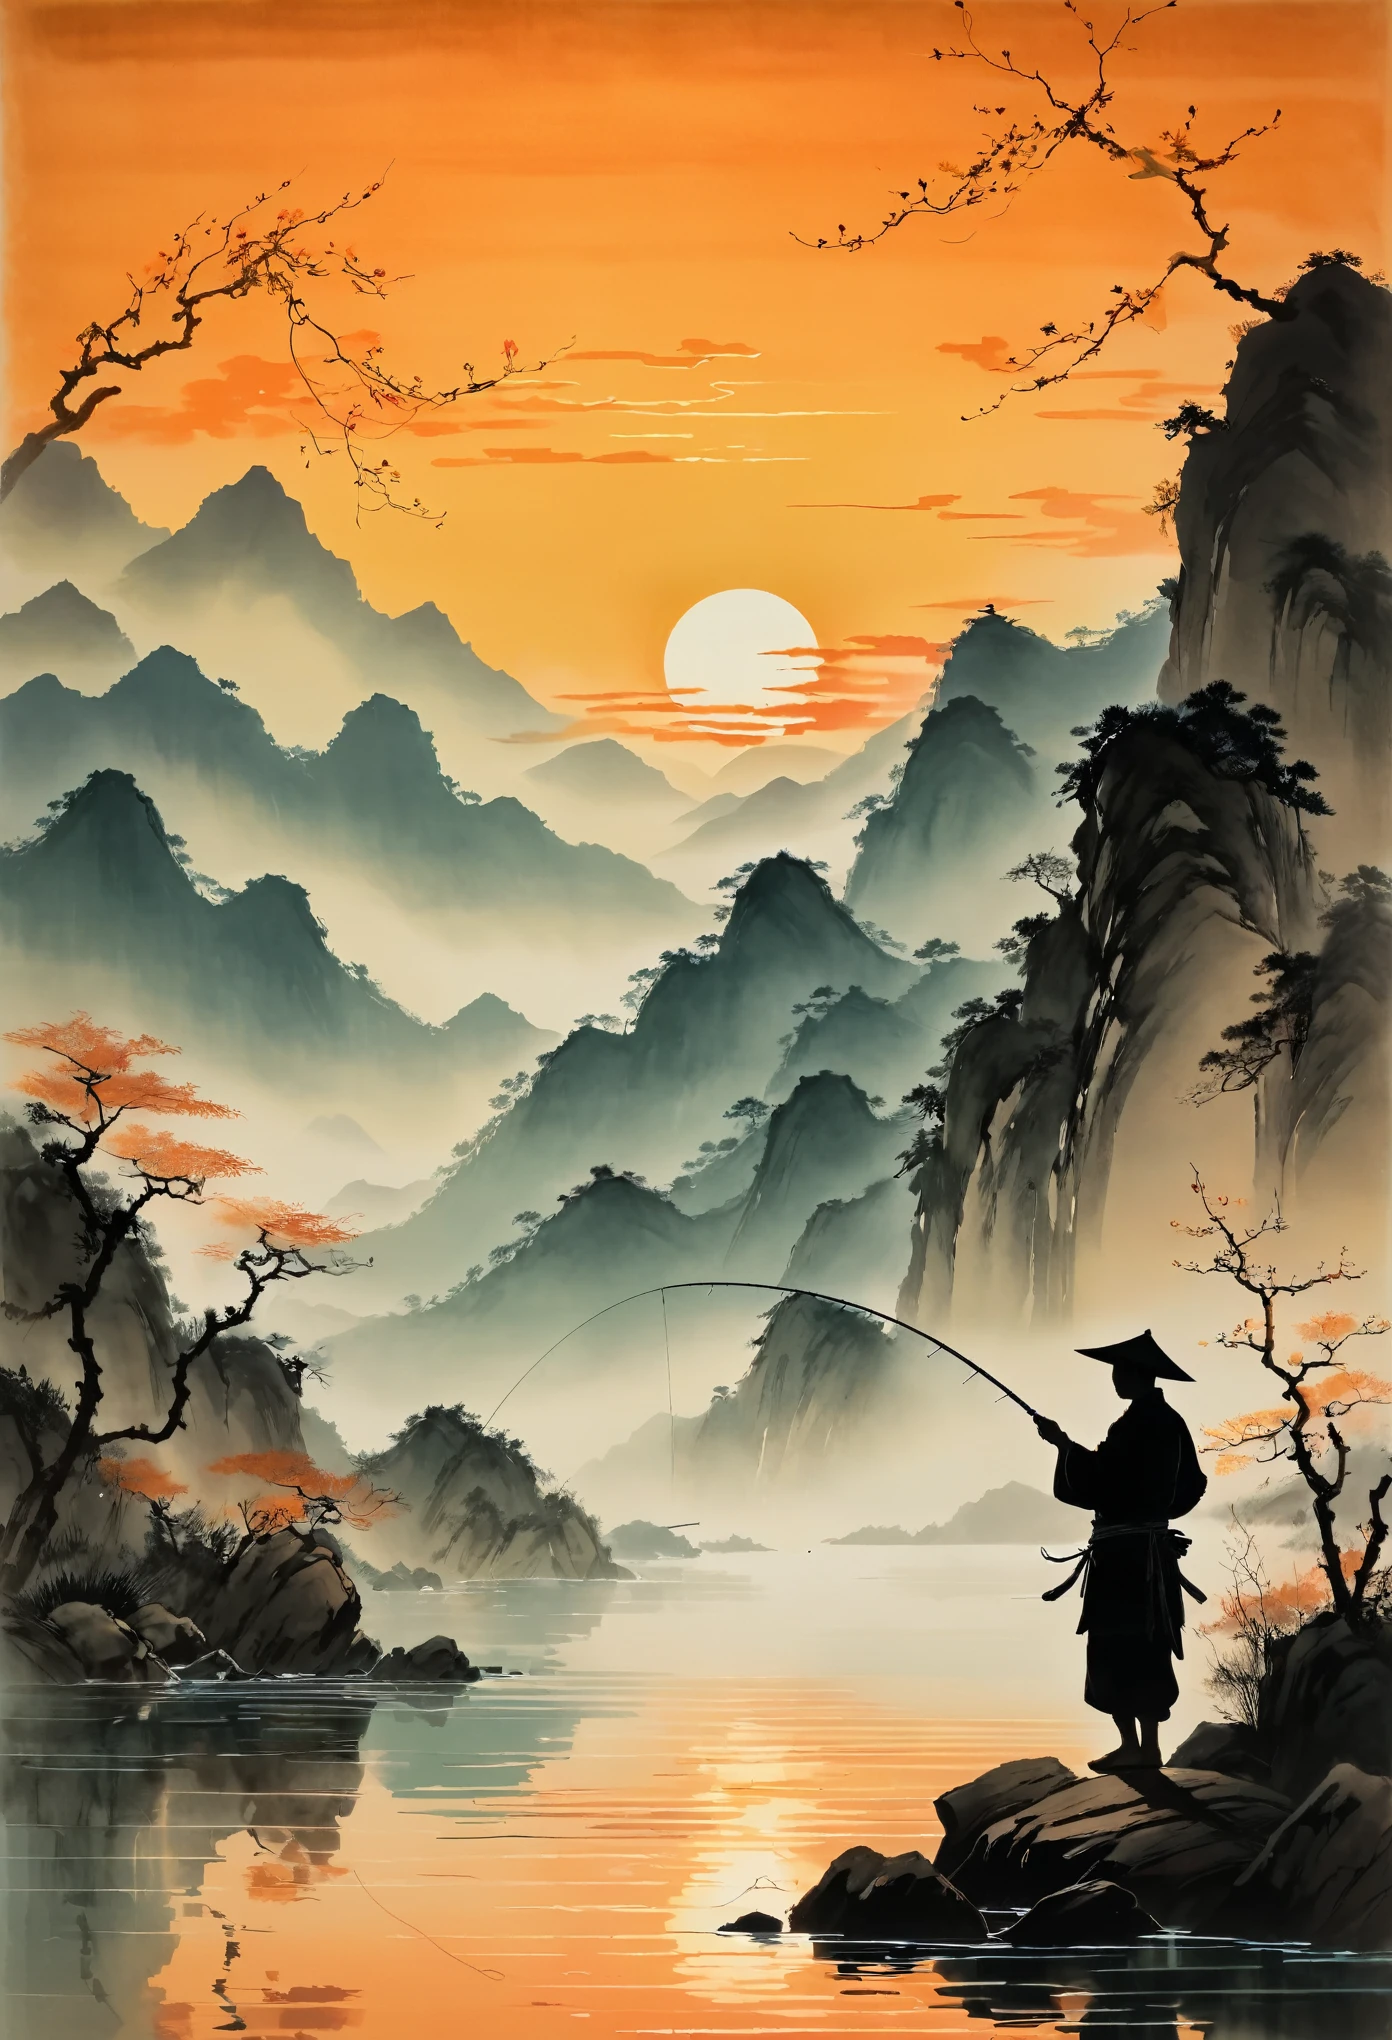 日没時に釣り糸を投げる釣り人のシルエット, 背景には山々が広がり、穏やかな水面にはオレンジ色が映っている. この場面は中国の芸術家張大千のスタイルで描かれている。. 